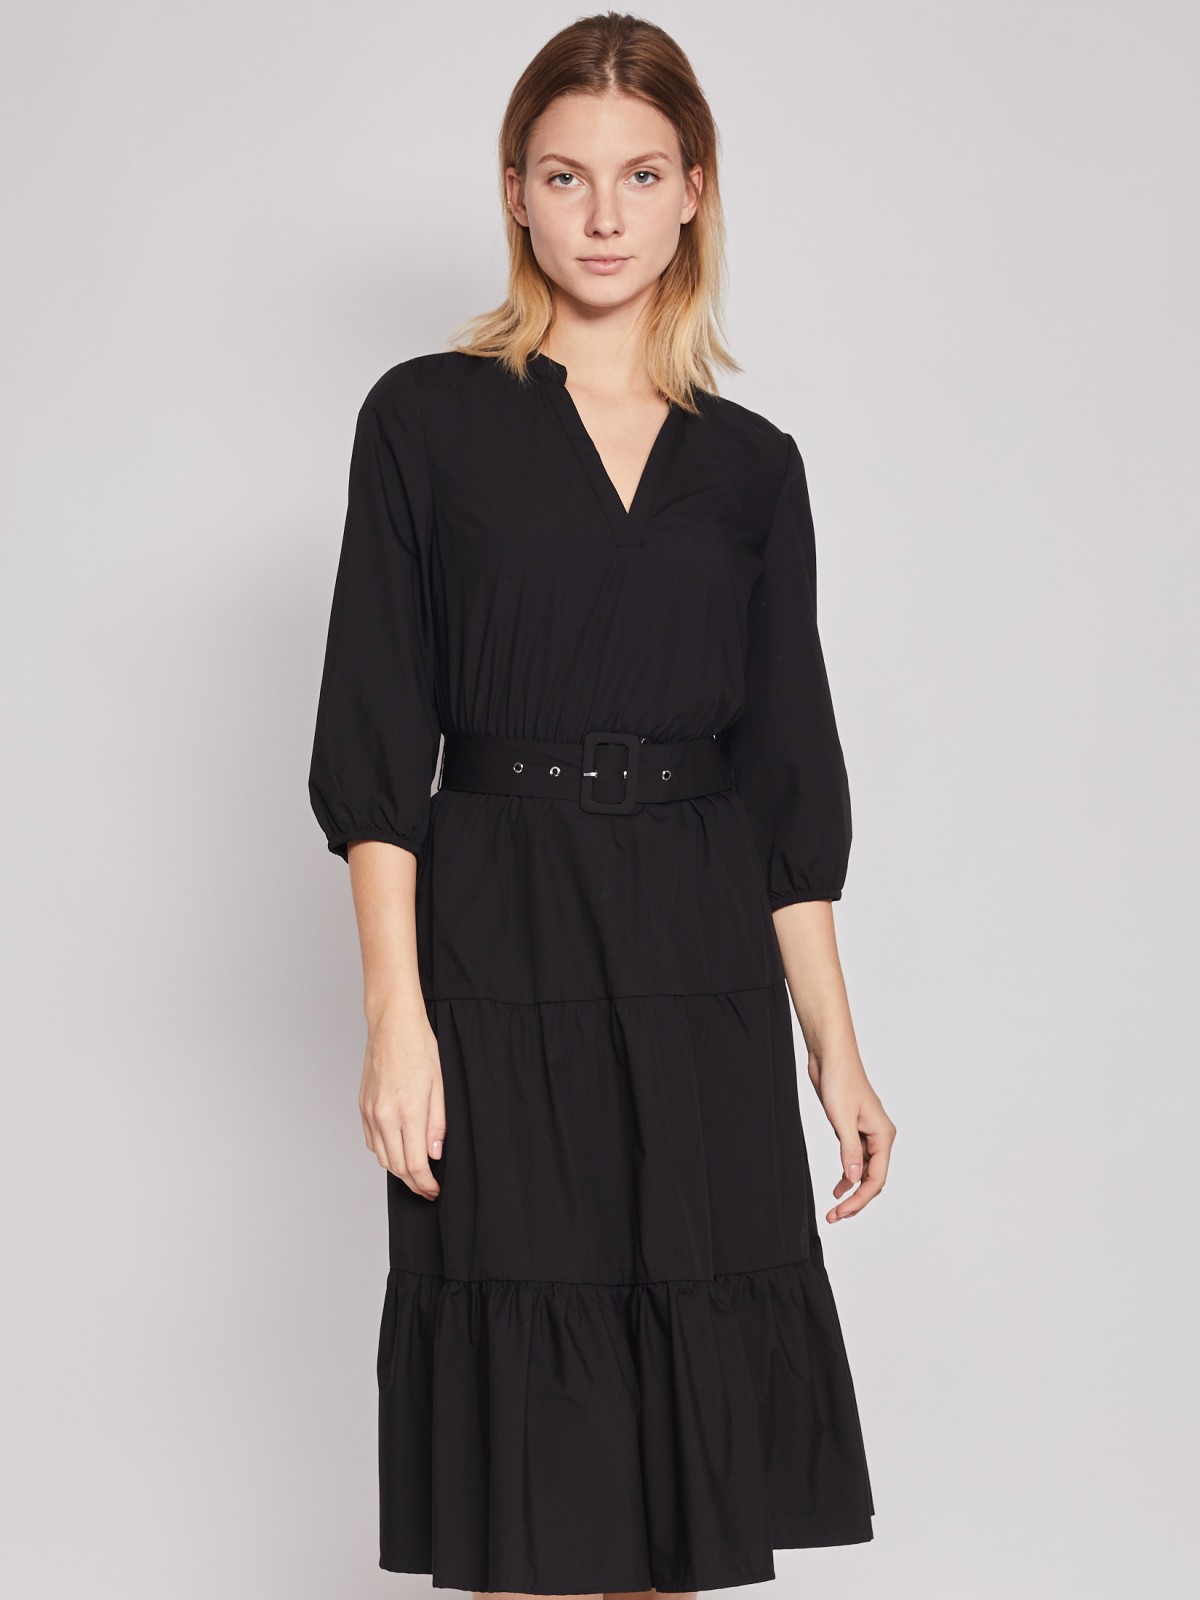 Ярусное платье с поясом zolla 222138291143, цвет черный, размер XS - фото 3